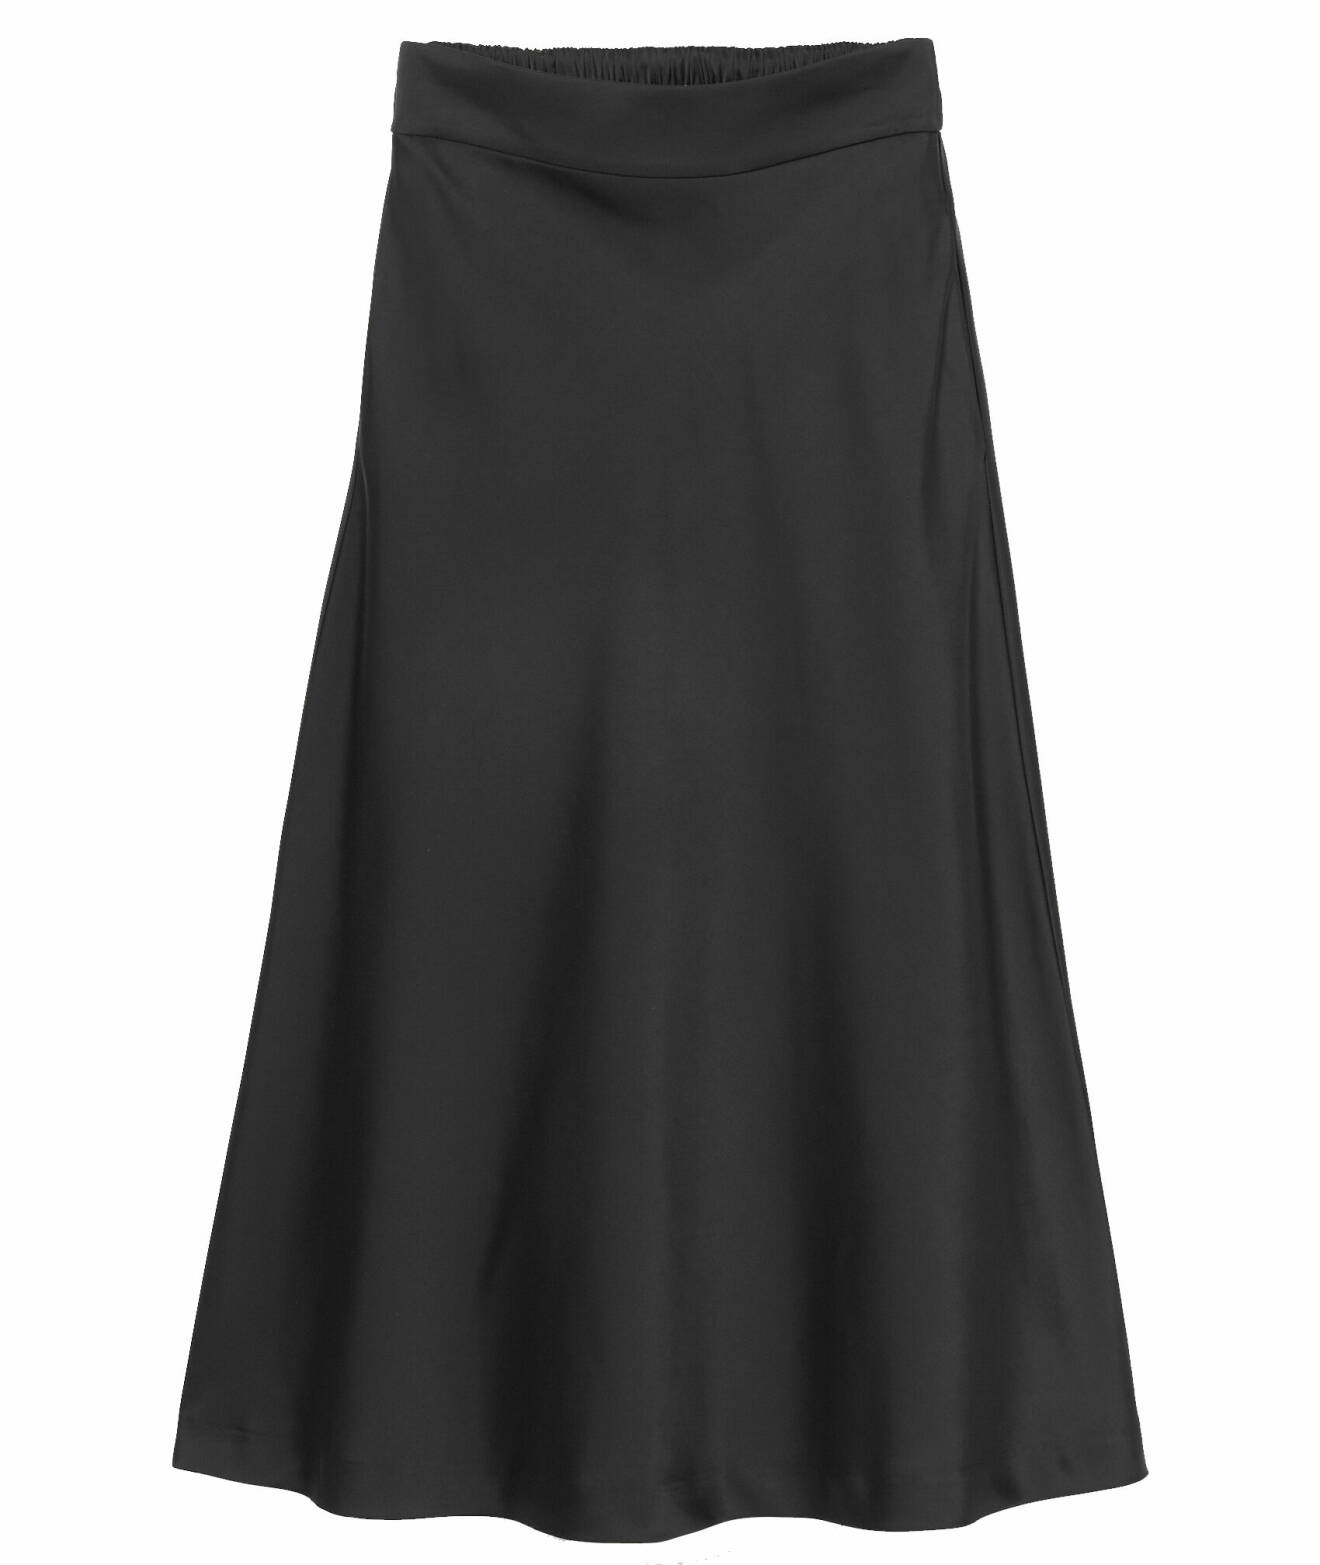 mode nyheter dam: kjol svart